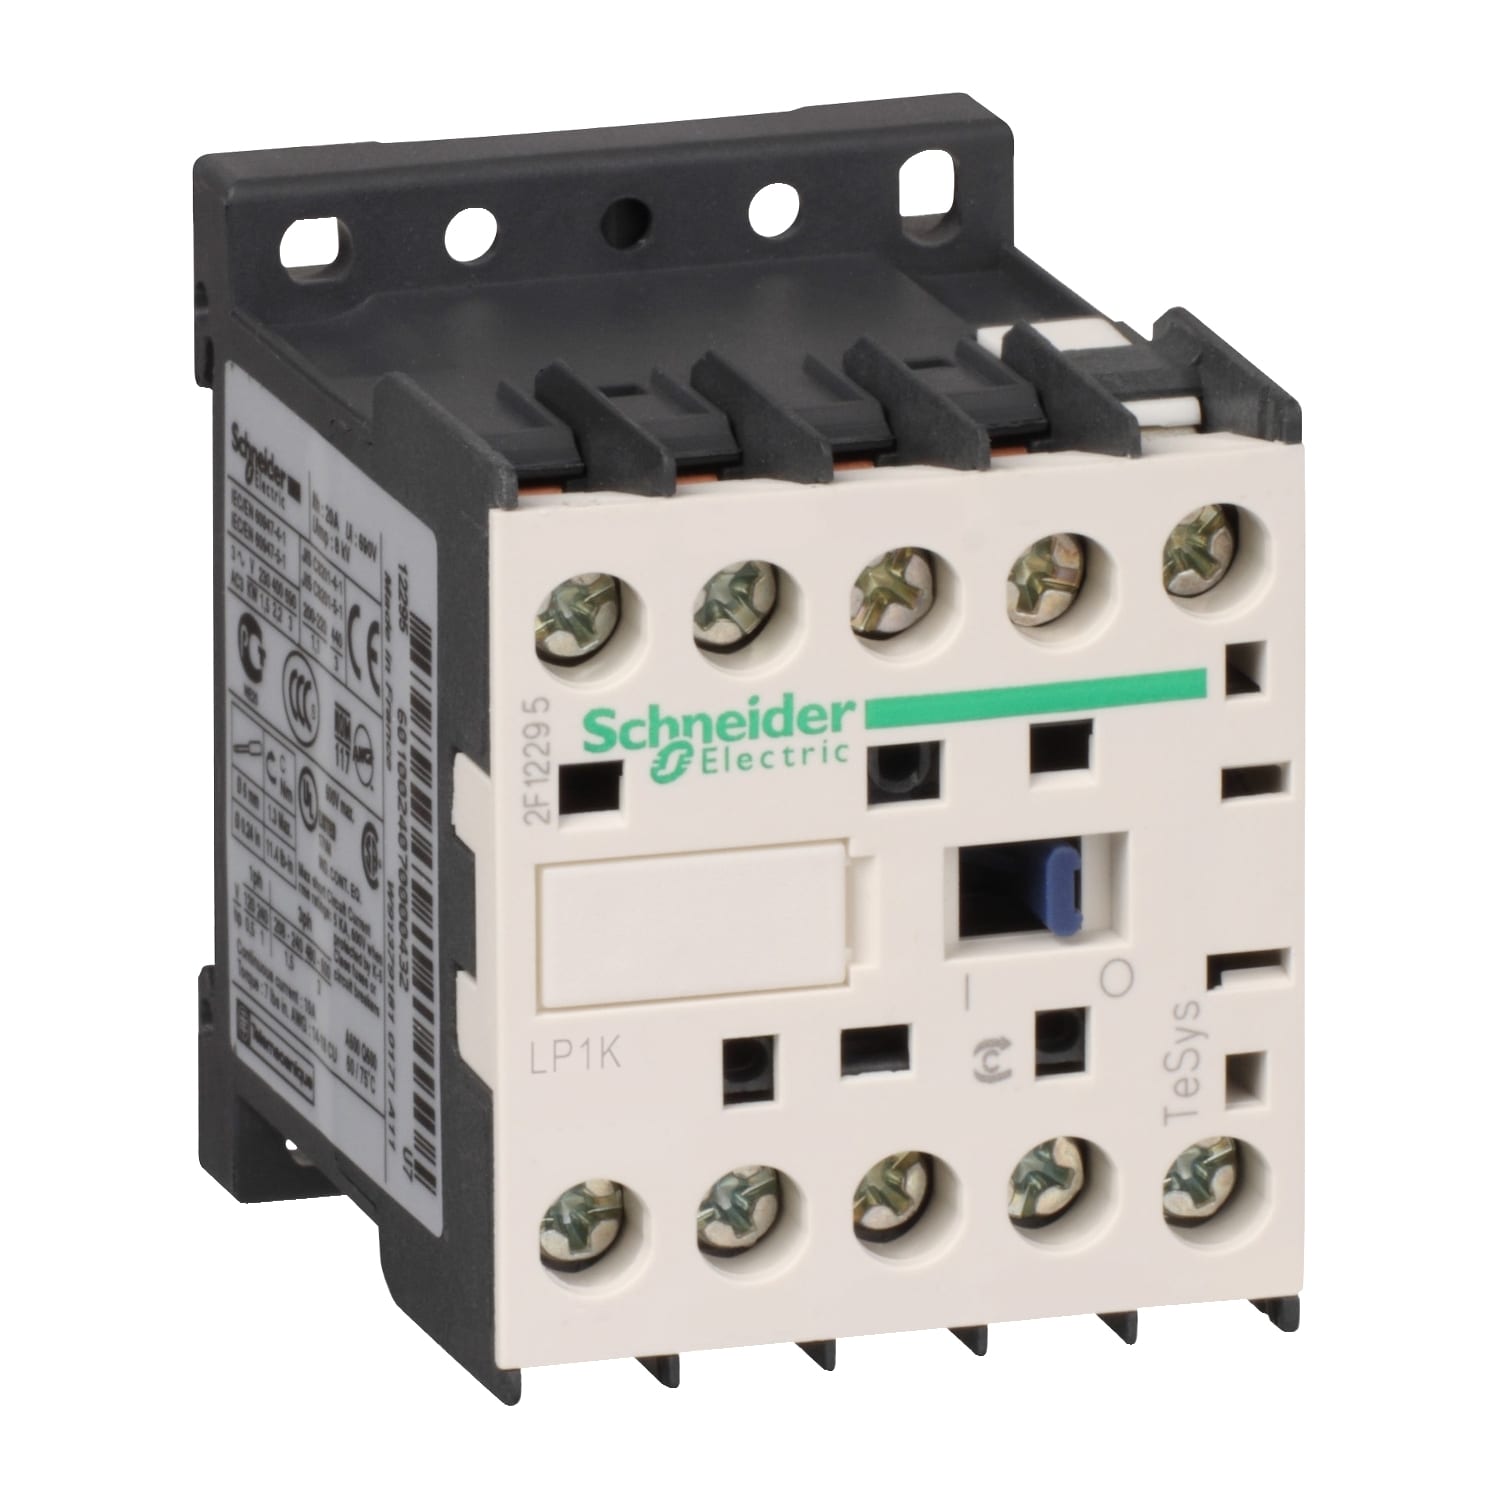 Schneider Electric - TeSys LP1K - contacteur - 4P - AC-1 440V - 20A - bobine 48Vcc